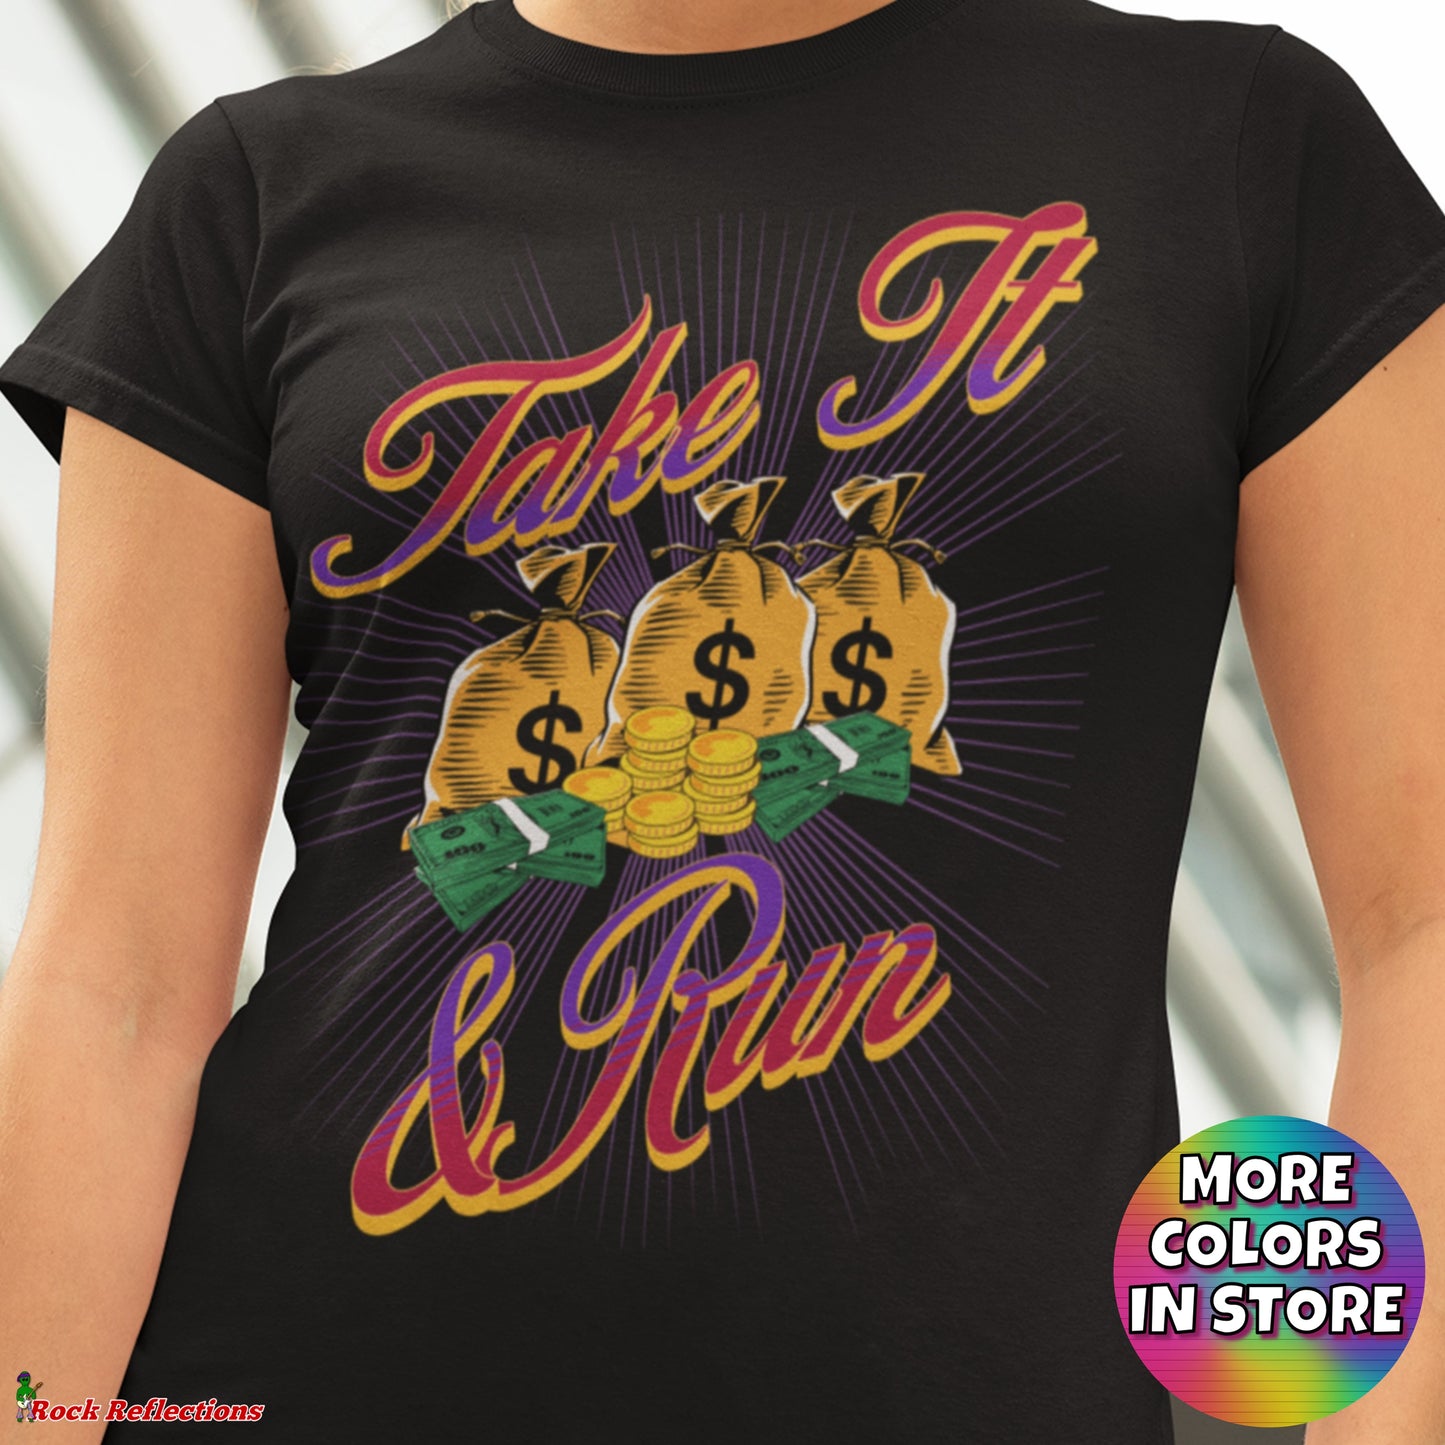 Take It & Run T-Shirt SPOD